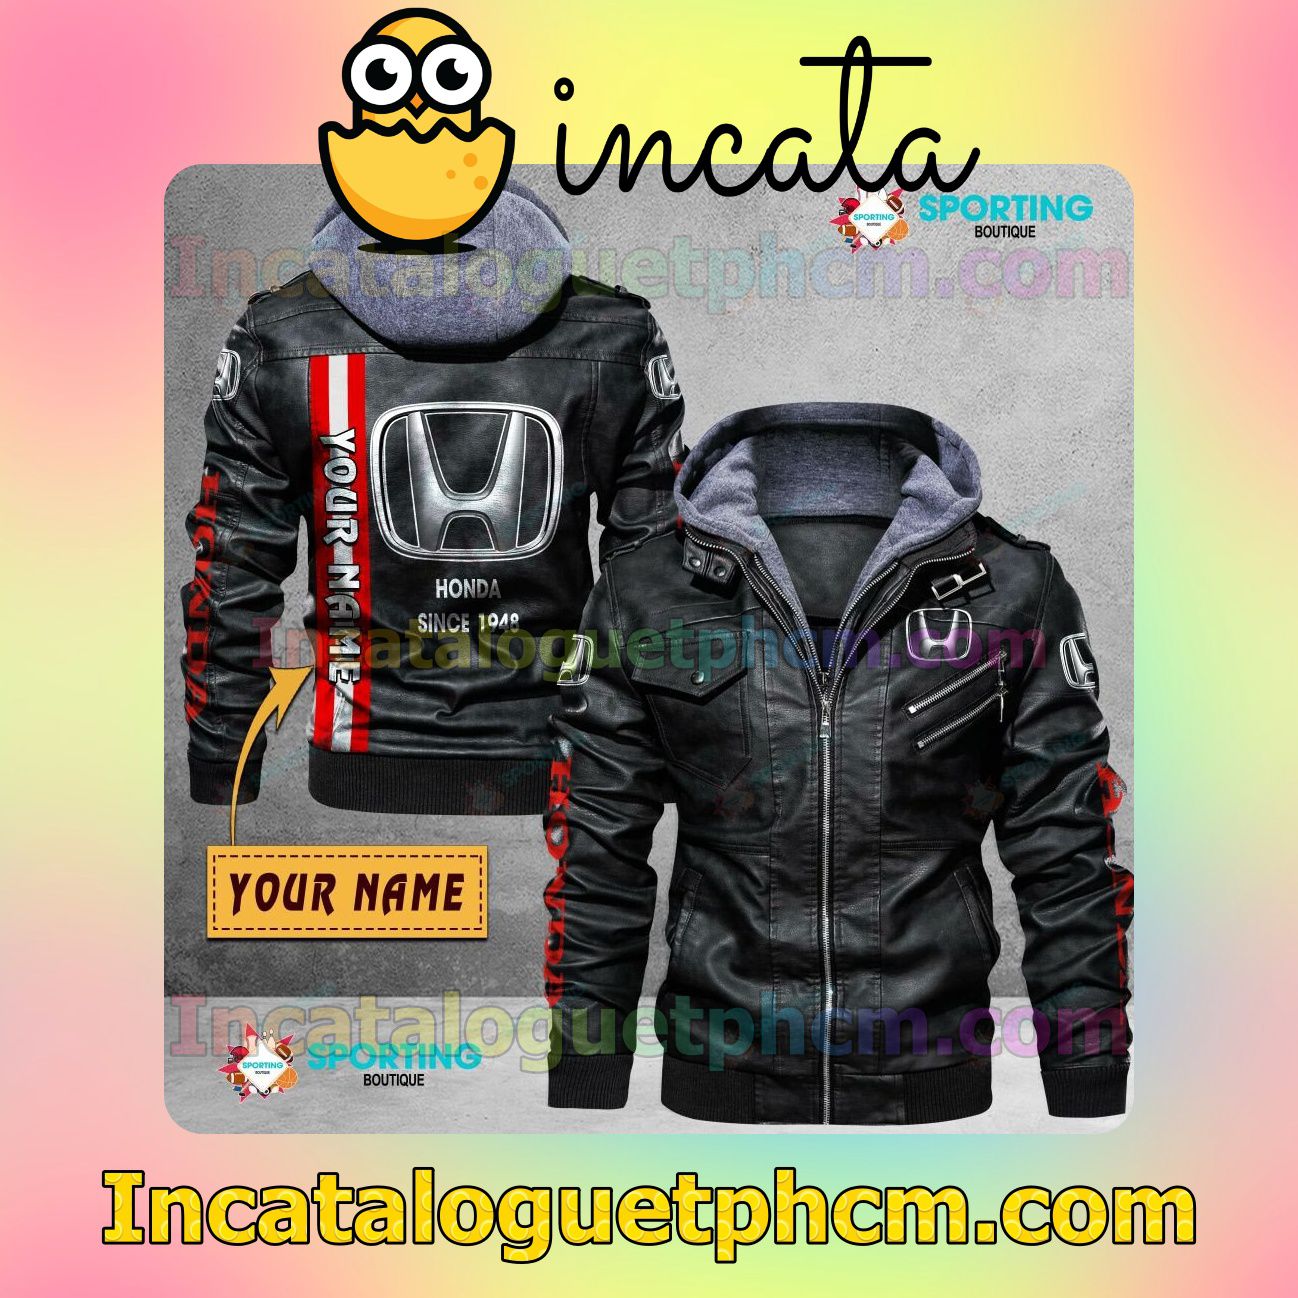 HONDA Customize Brand Uniform Leather Jacket